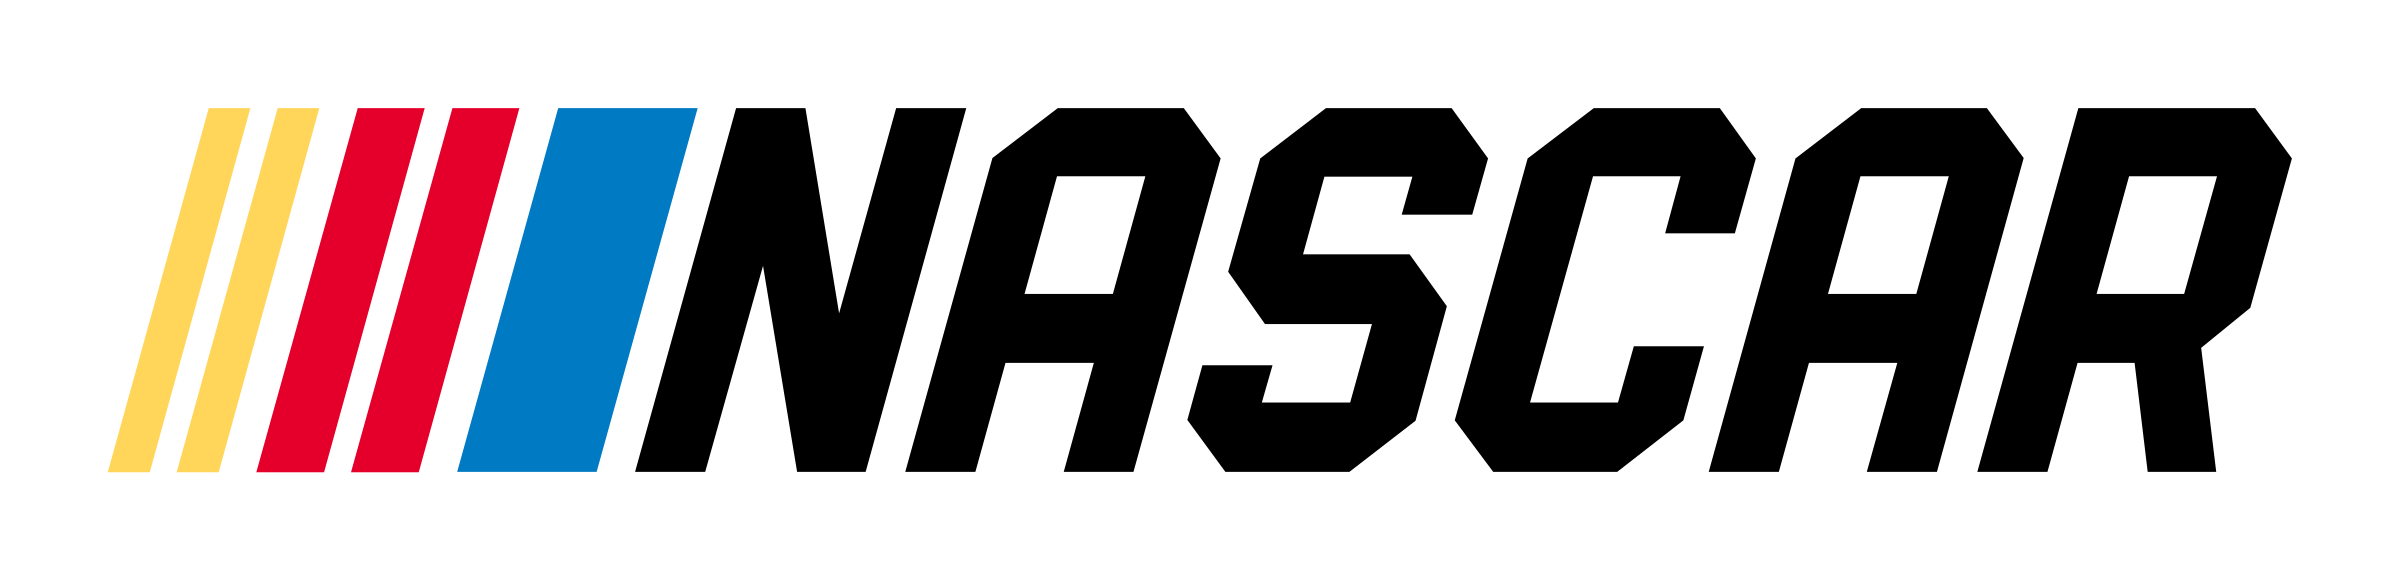 Nascar.com Logo - Nascar Logos